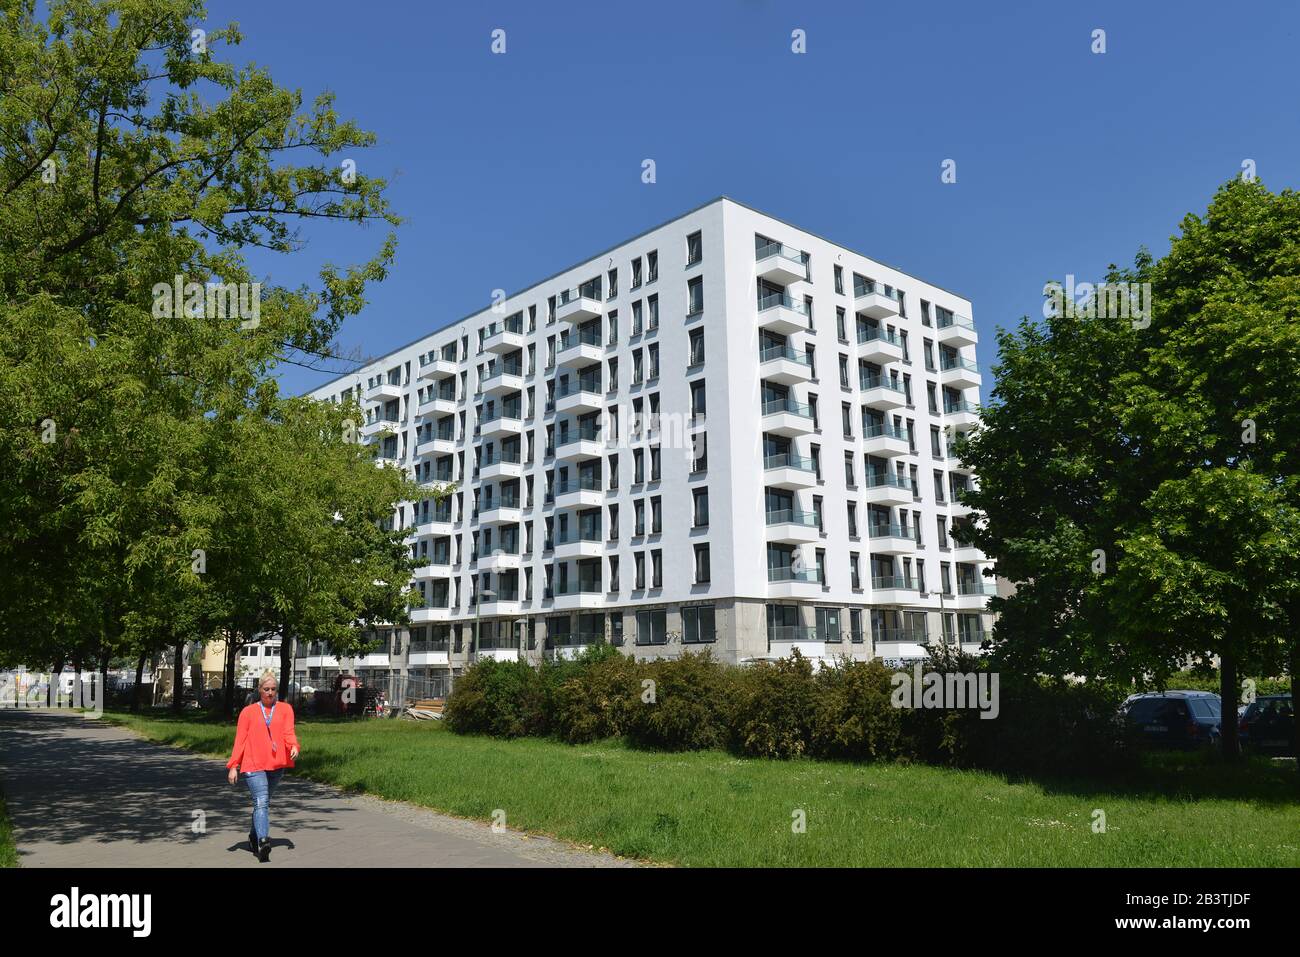 Wohnhaus, Muehlenstrasse, Friedrichshain, Berlin Deutschland / Mühlenstraße Stock Photo